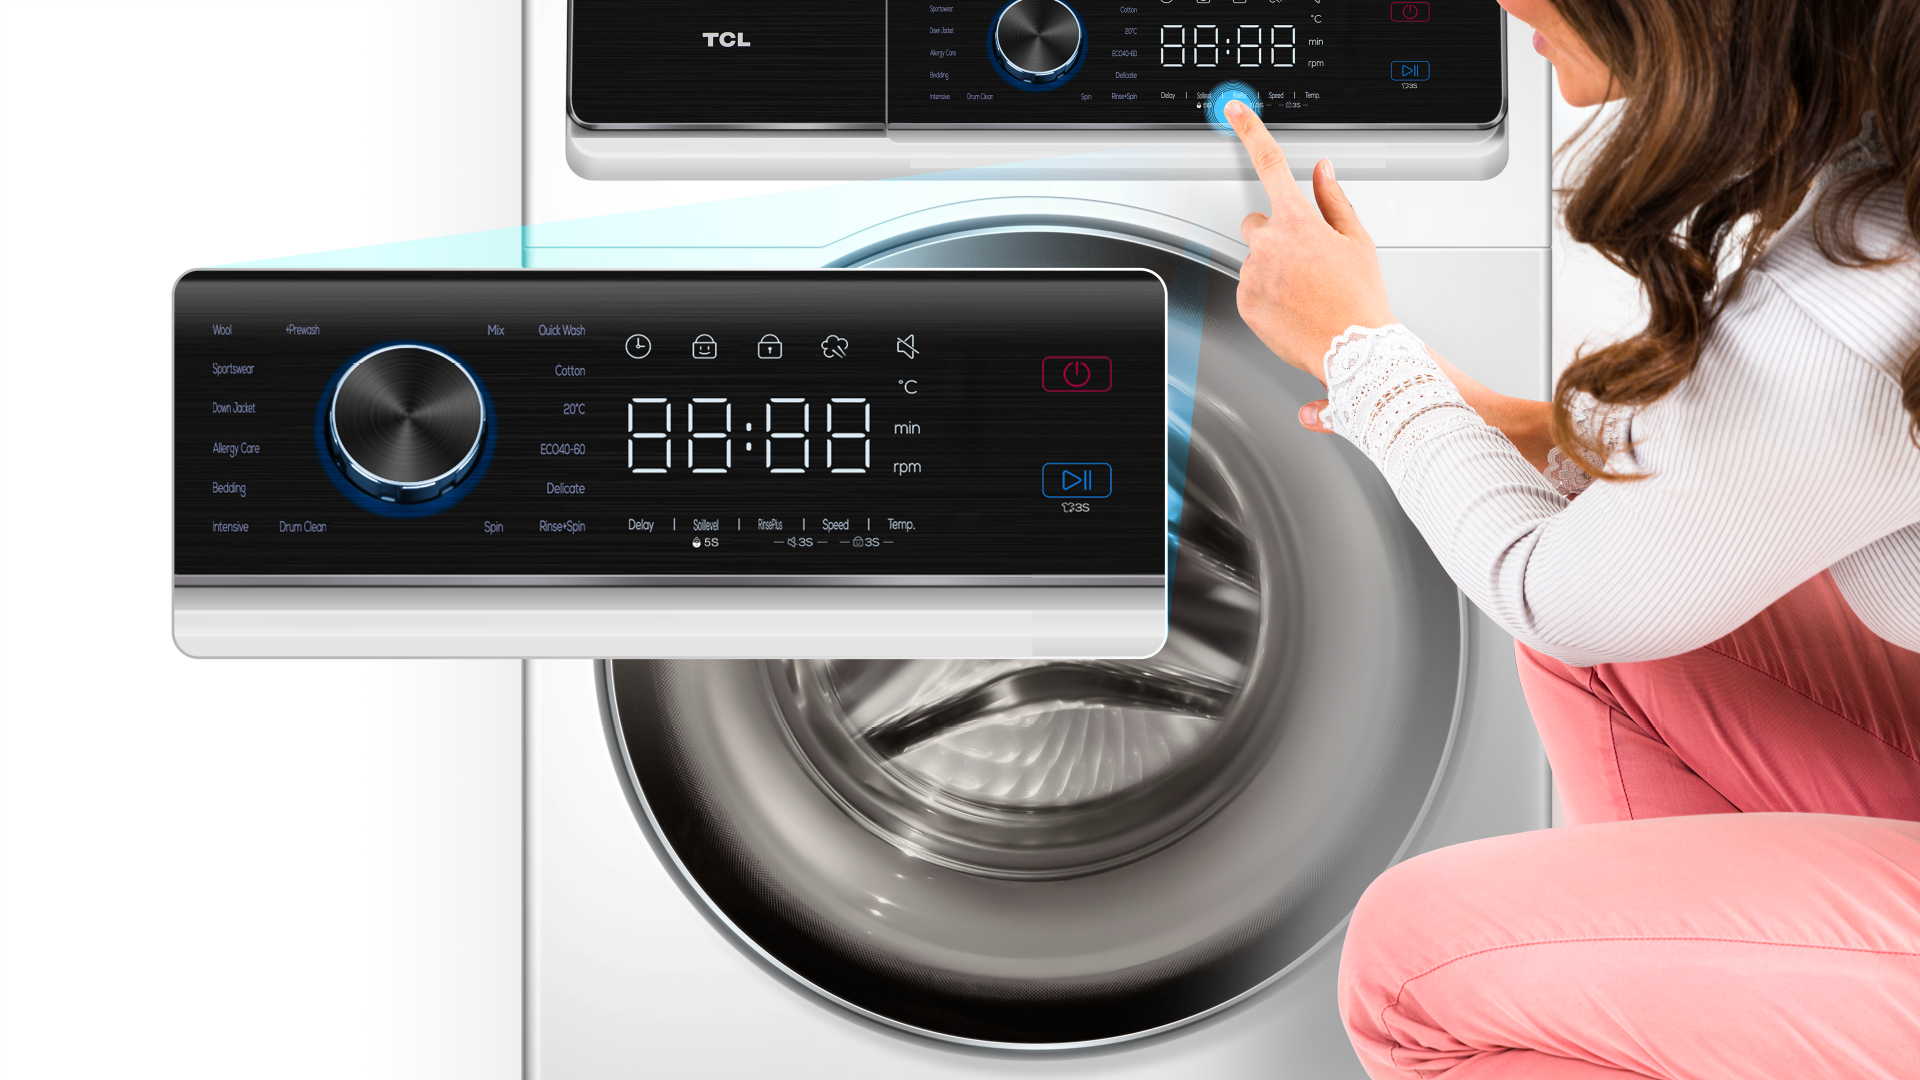 南宫ng·28 washing machine FP1024WC0 washing programs